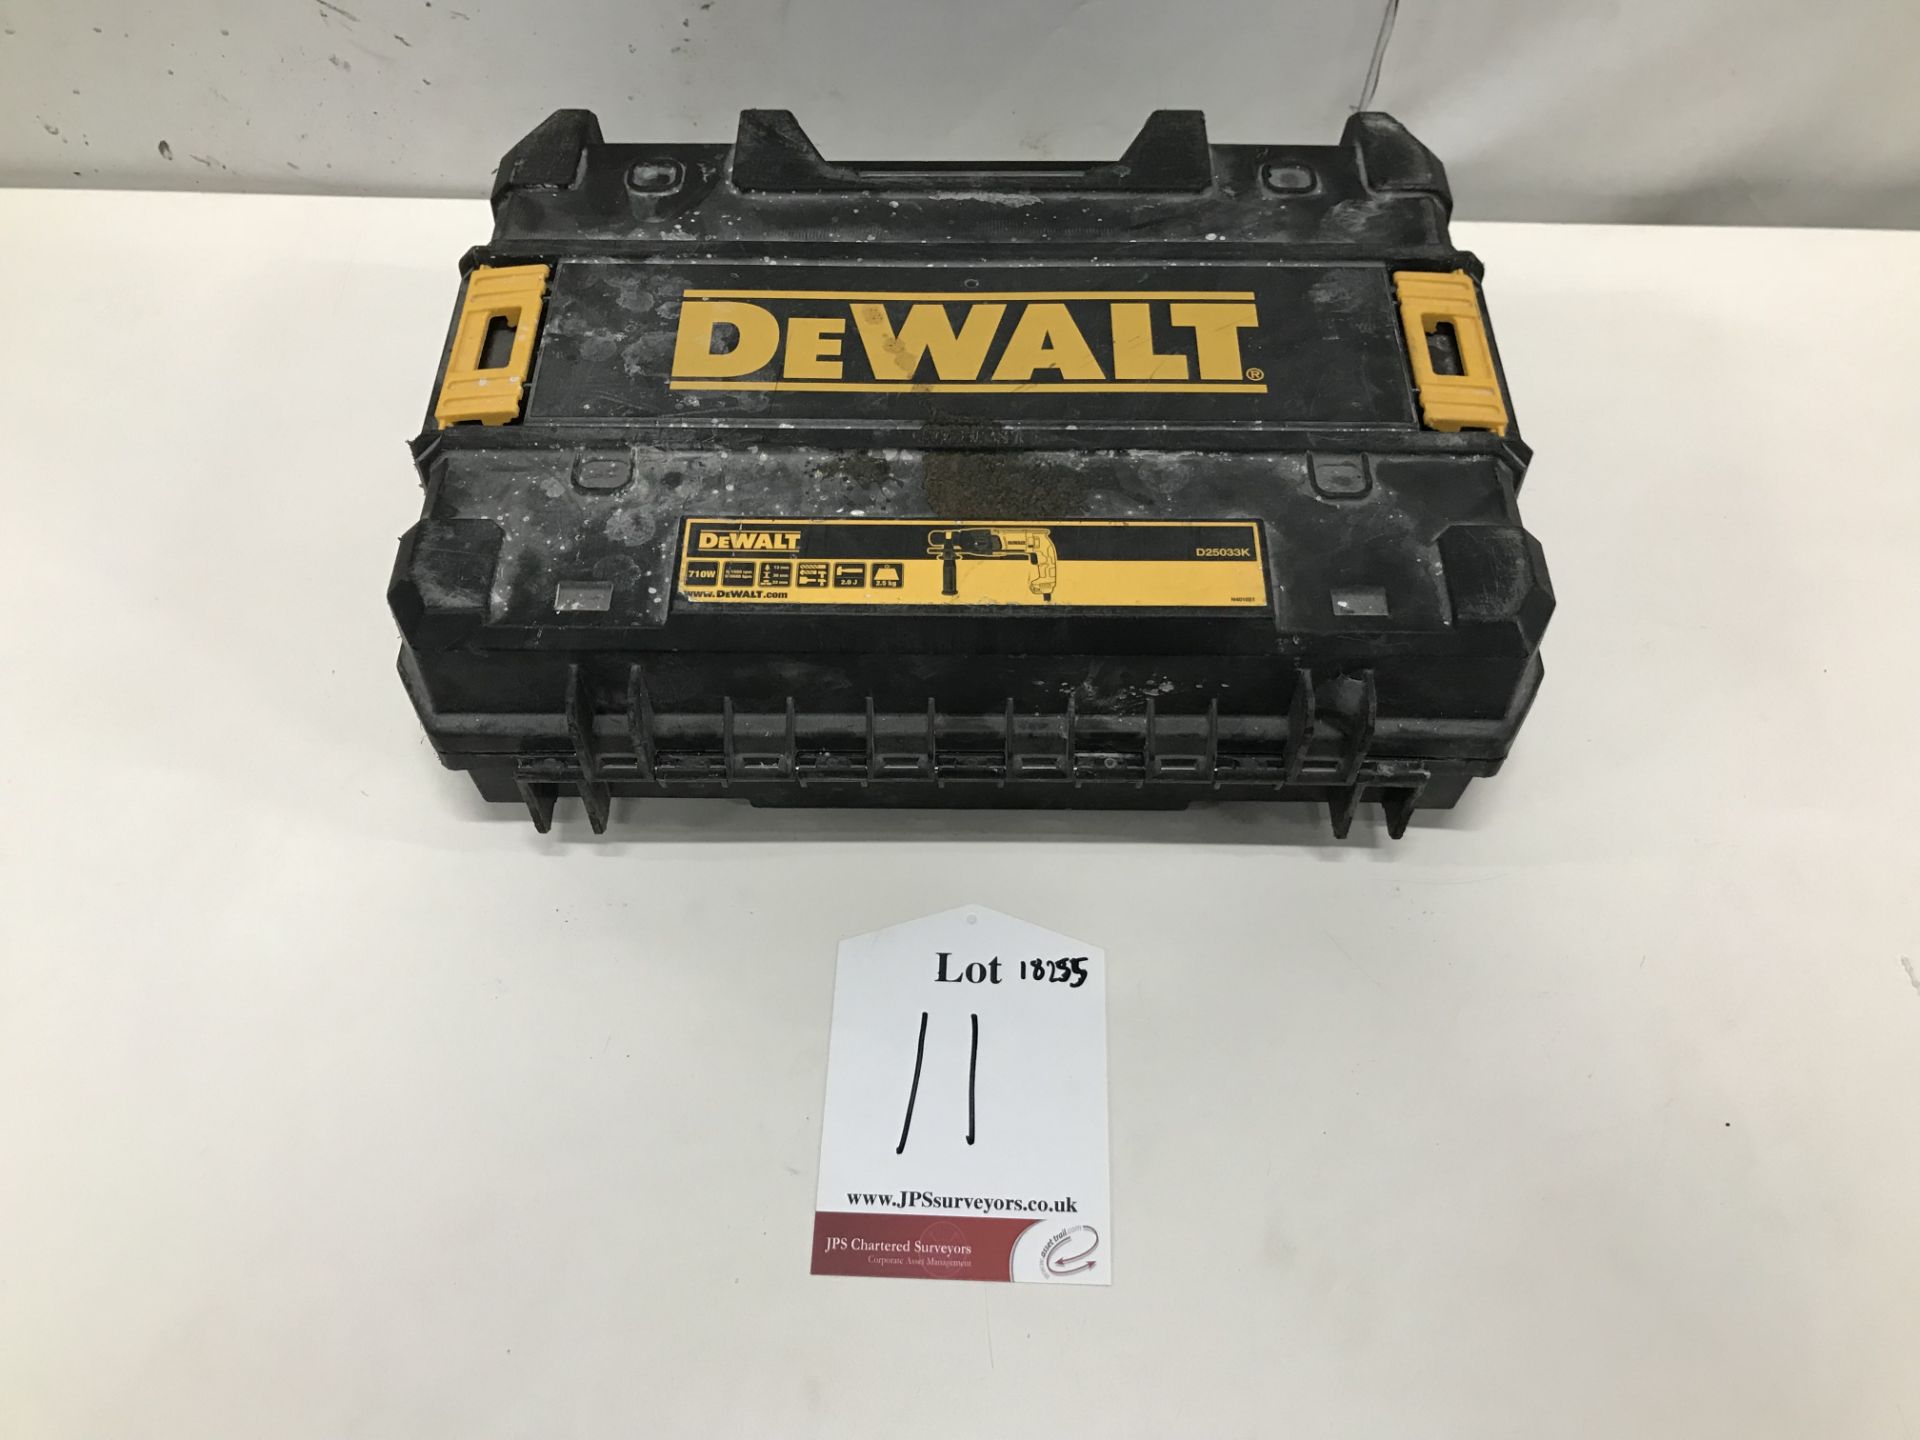 Dewalt D25033K Hammer Drill w/ Case